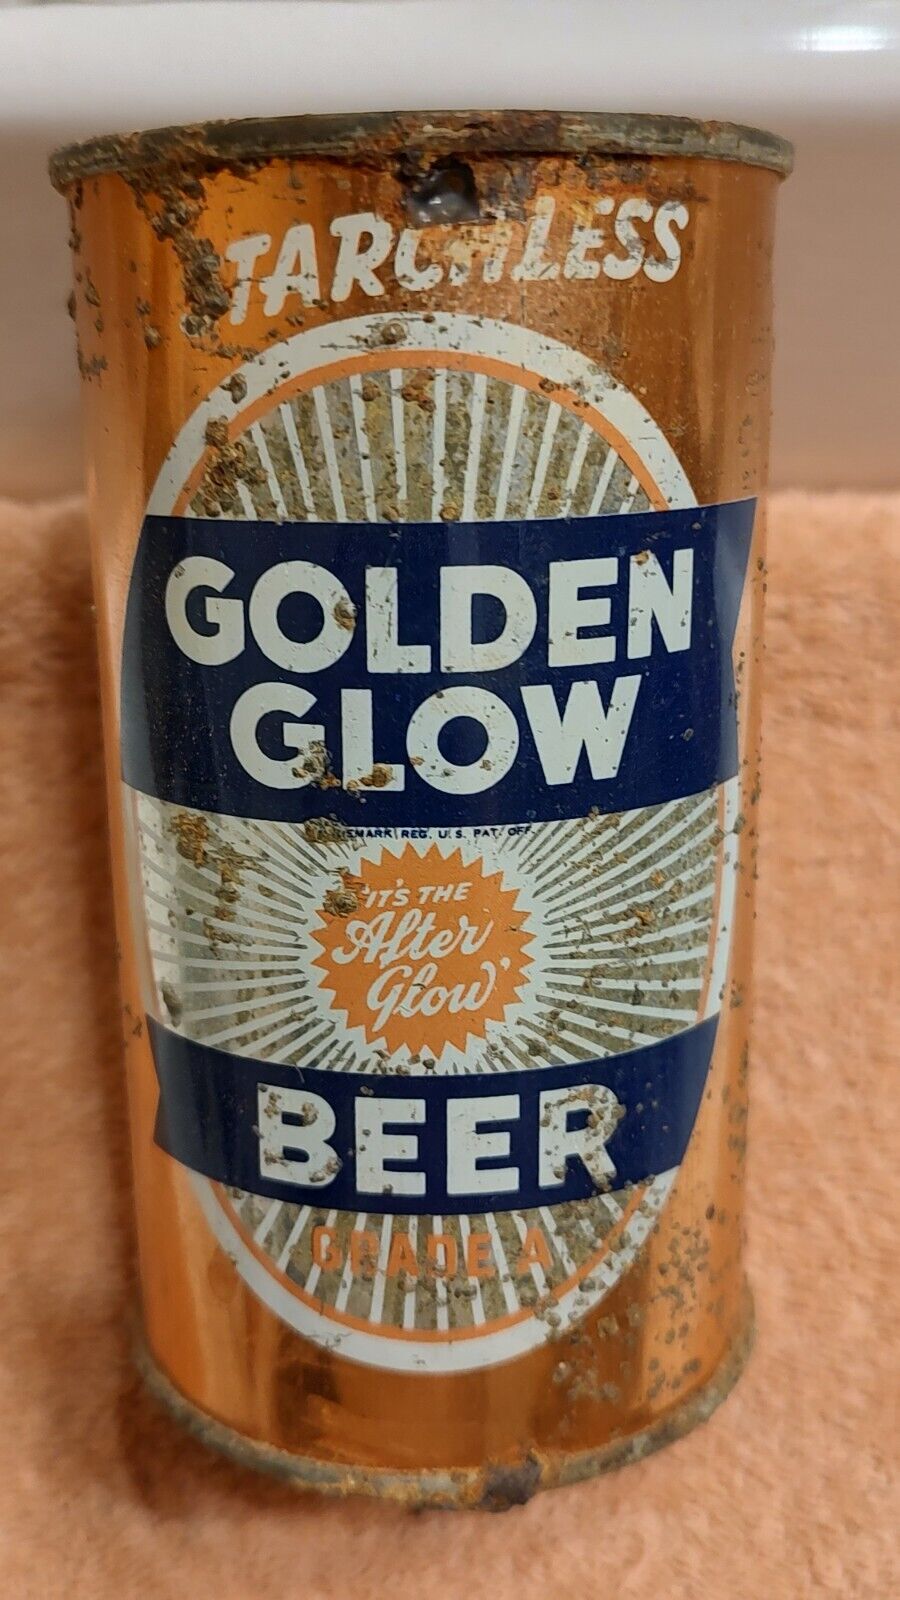 1930s GOLDEN GLOW BEER, IRTP flat top beer can, Oakland, California